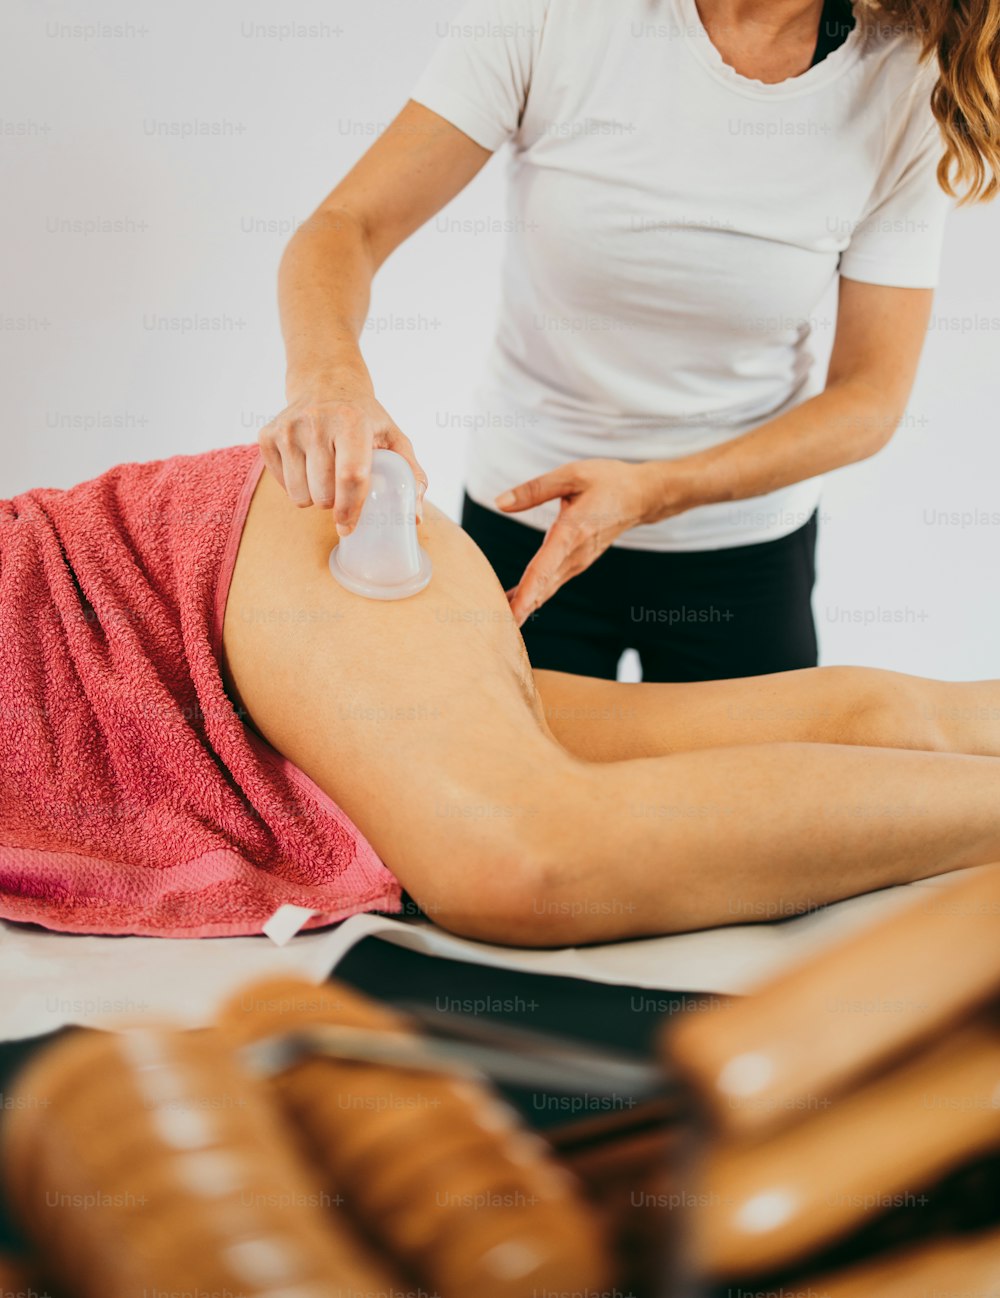 Frau mittleren Alters bei professioneller Anti-Cellulite-Massage mit Ventuza Vakuum-Körperzieher. Nahaufnahme.